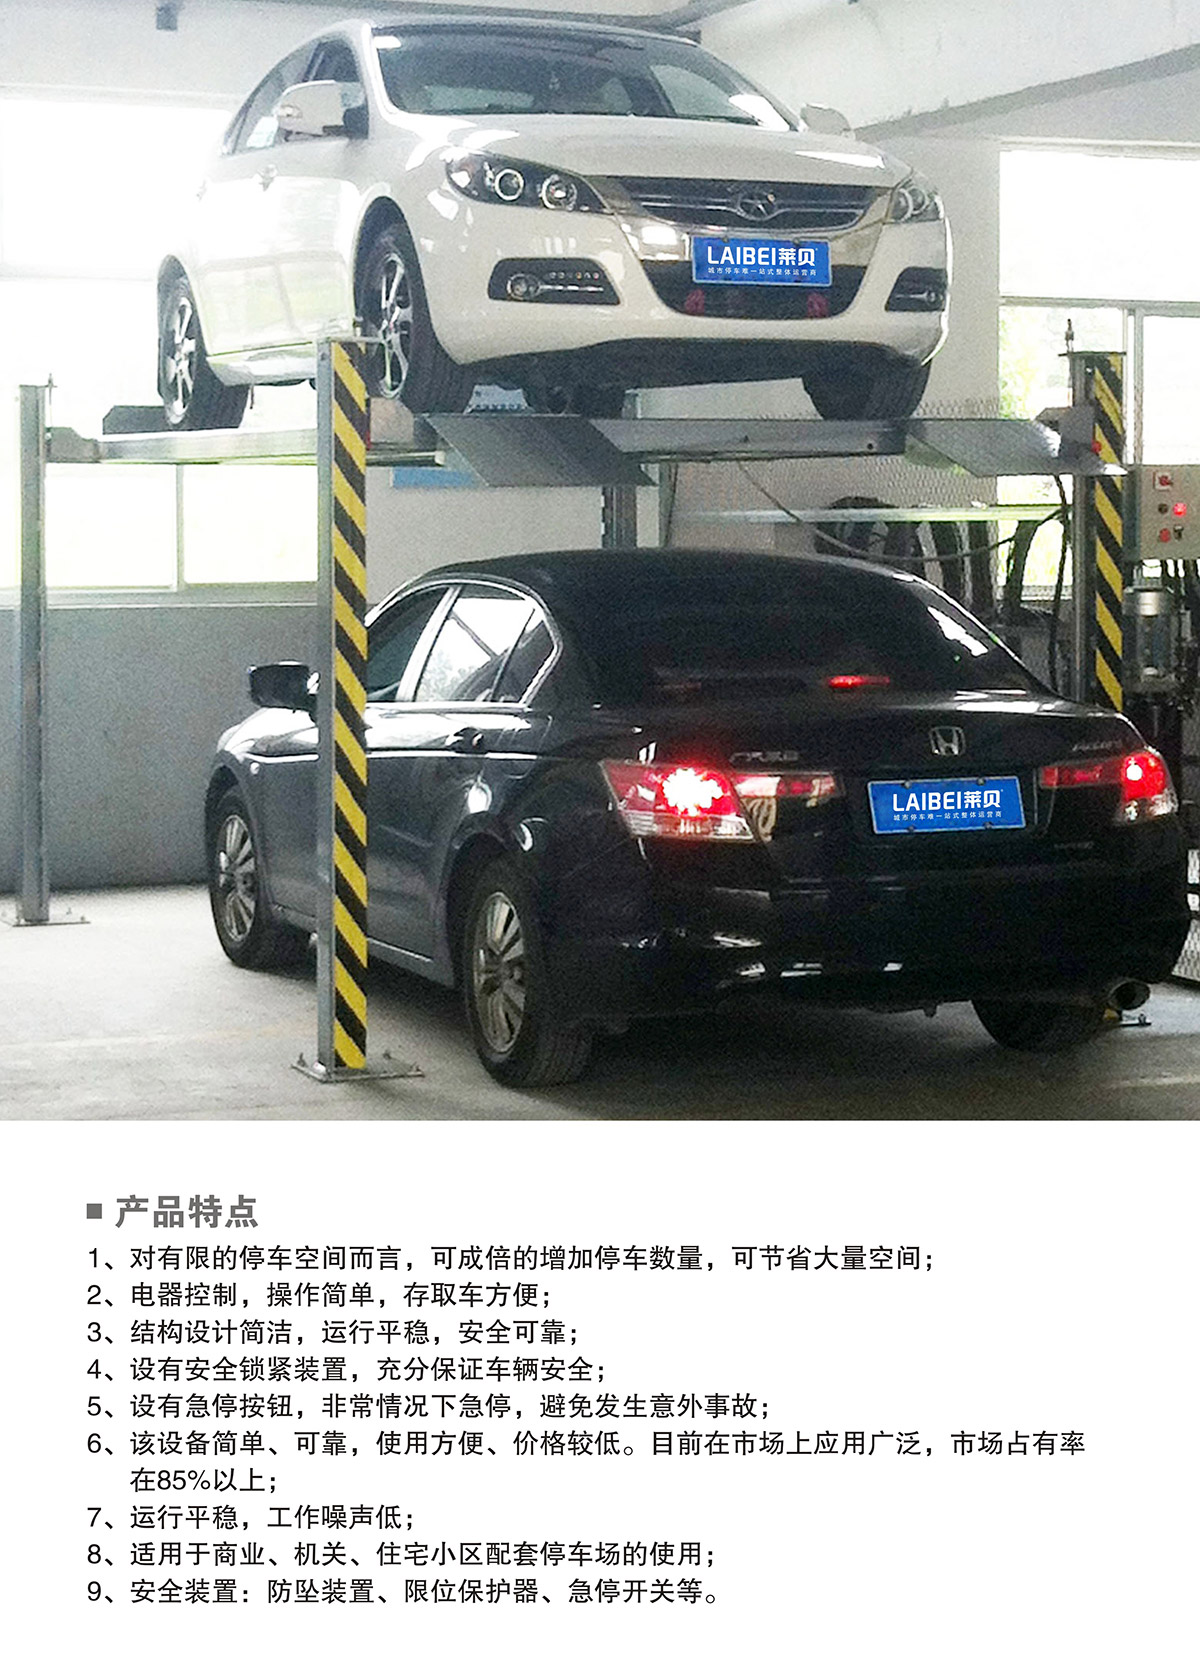 云南PJS四柱简易升降立体停车场库设备产品特点.jpg